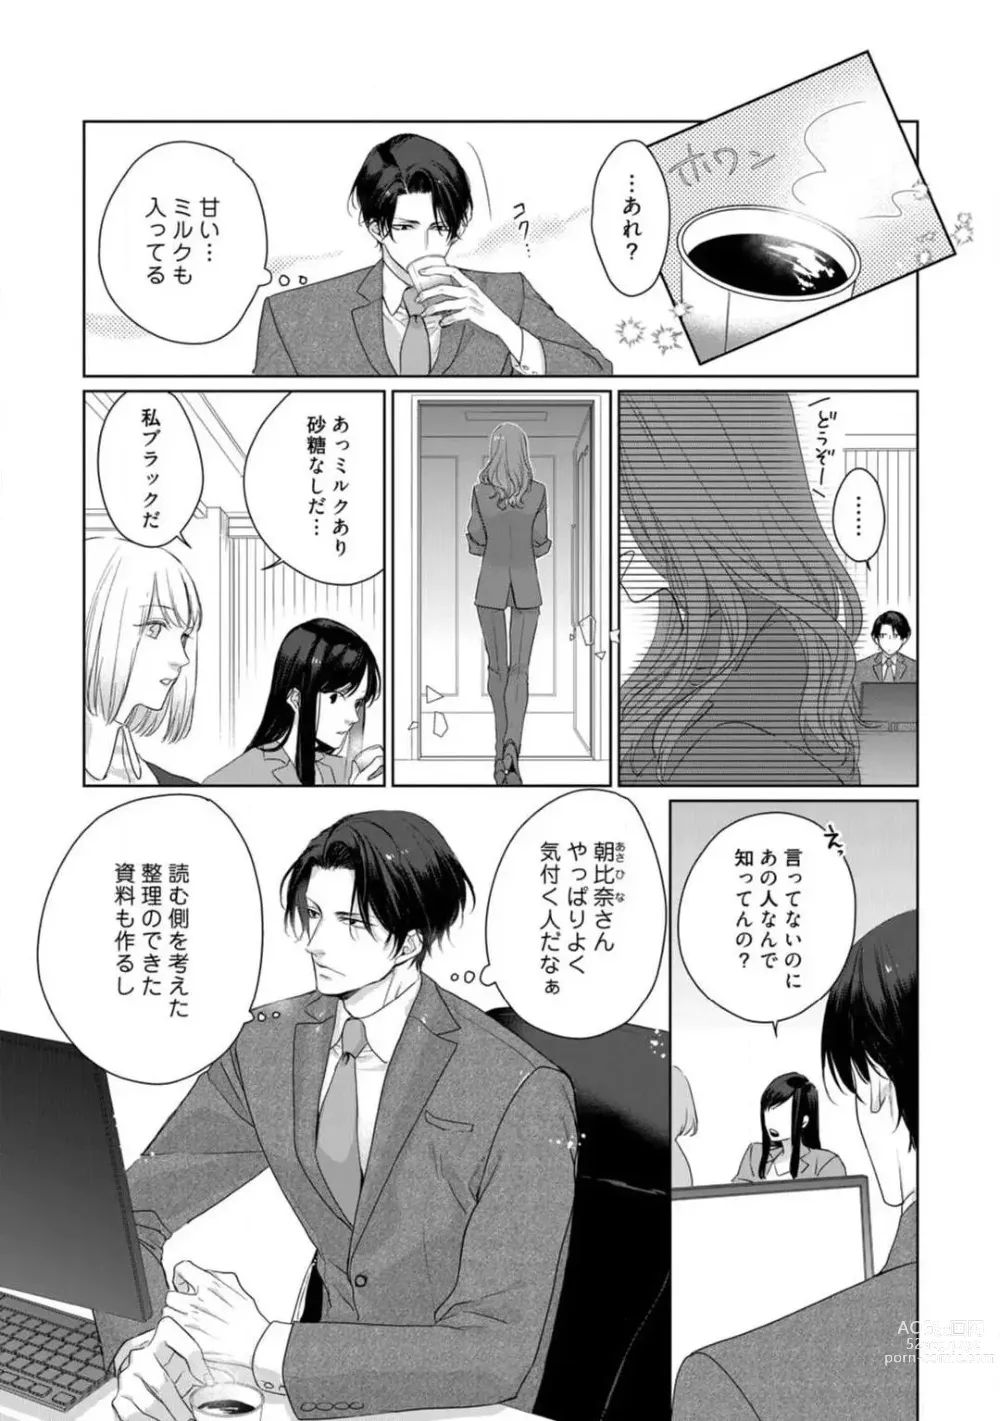 Page 118 of manga Anata no Koisuru Kiraina Watashi~Chp.1-4